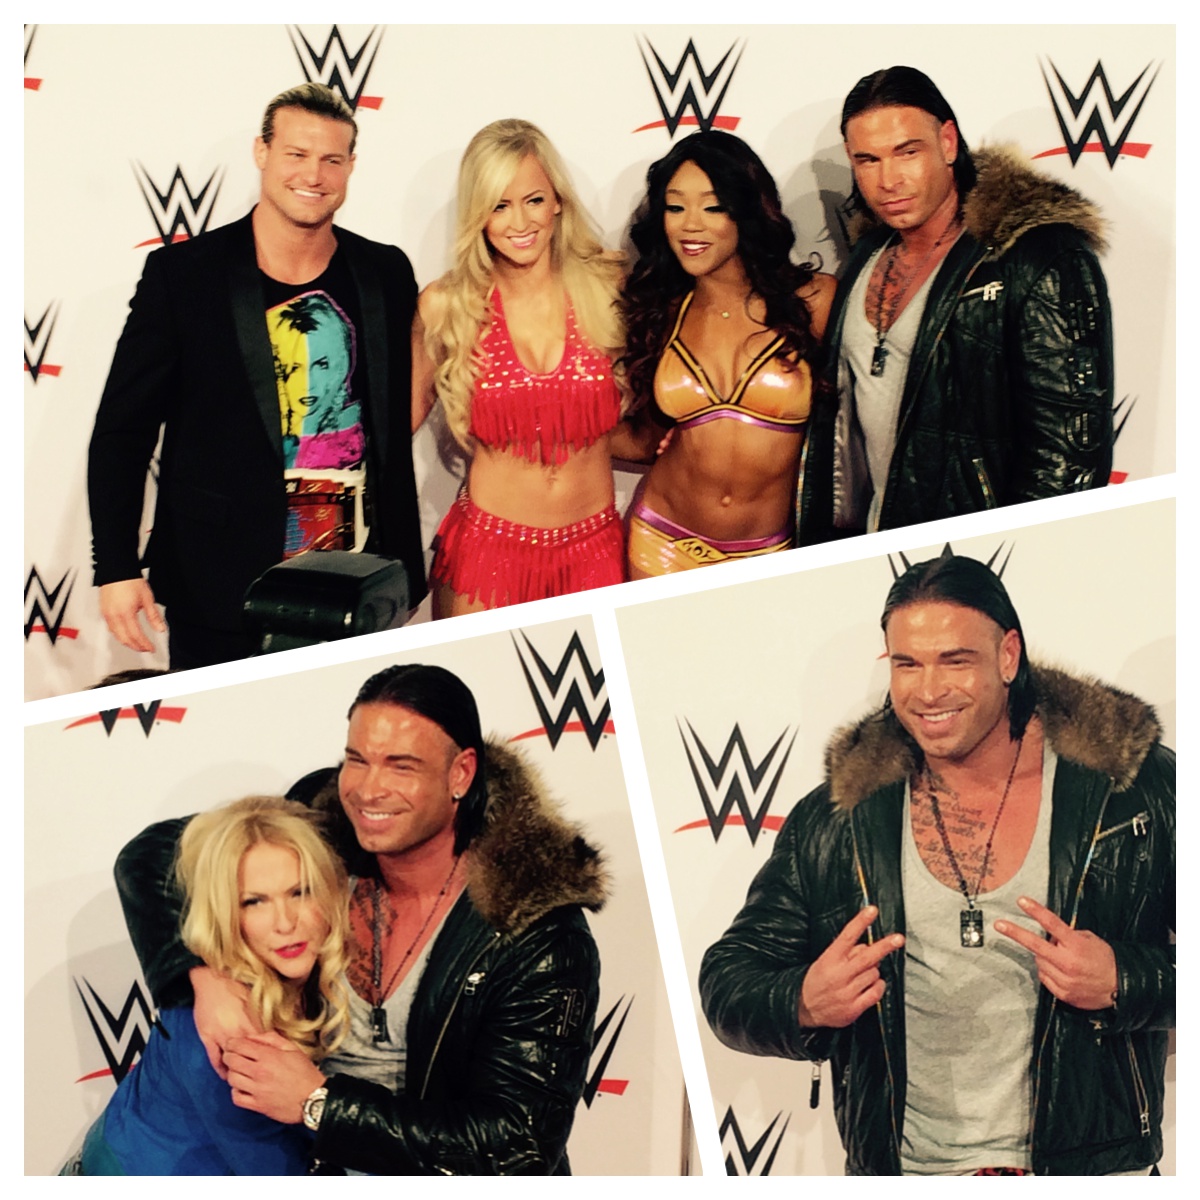 WWE Superstars zusammen mit Tim Wiese auf dem roten Teppich bei der WWE Live-Show am 15.11.2014 in Frankfurt